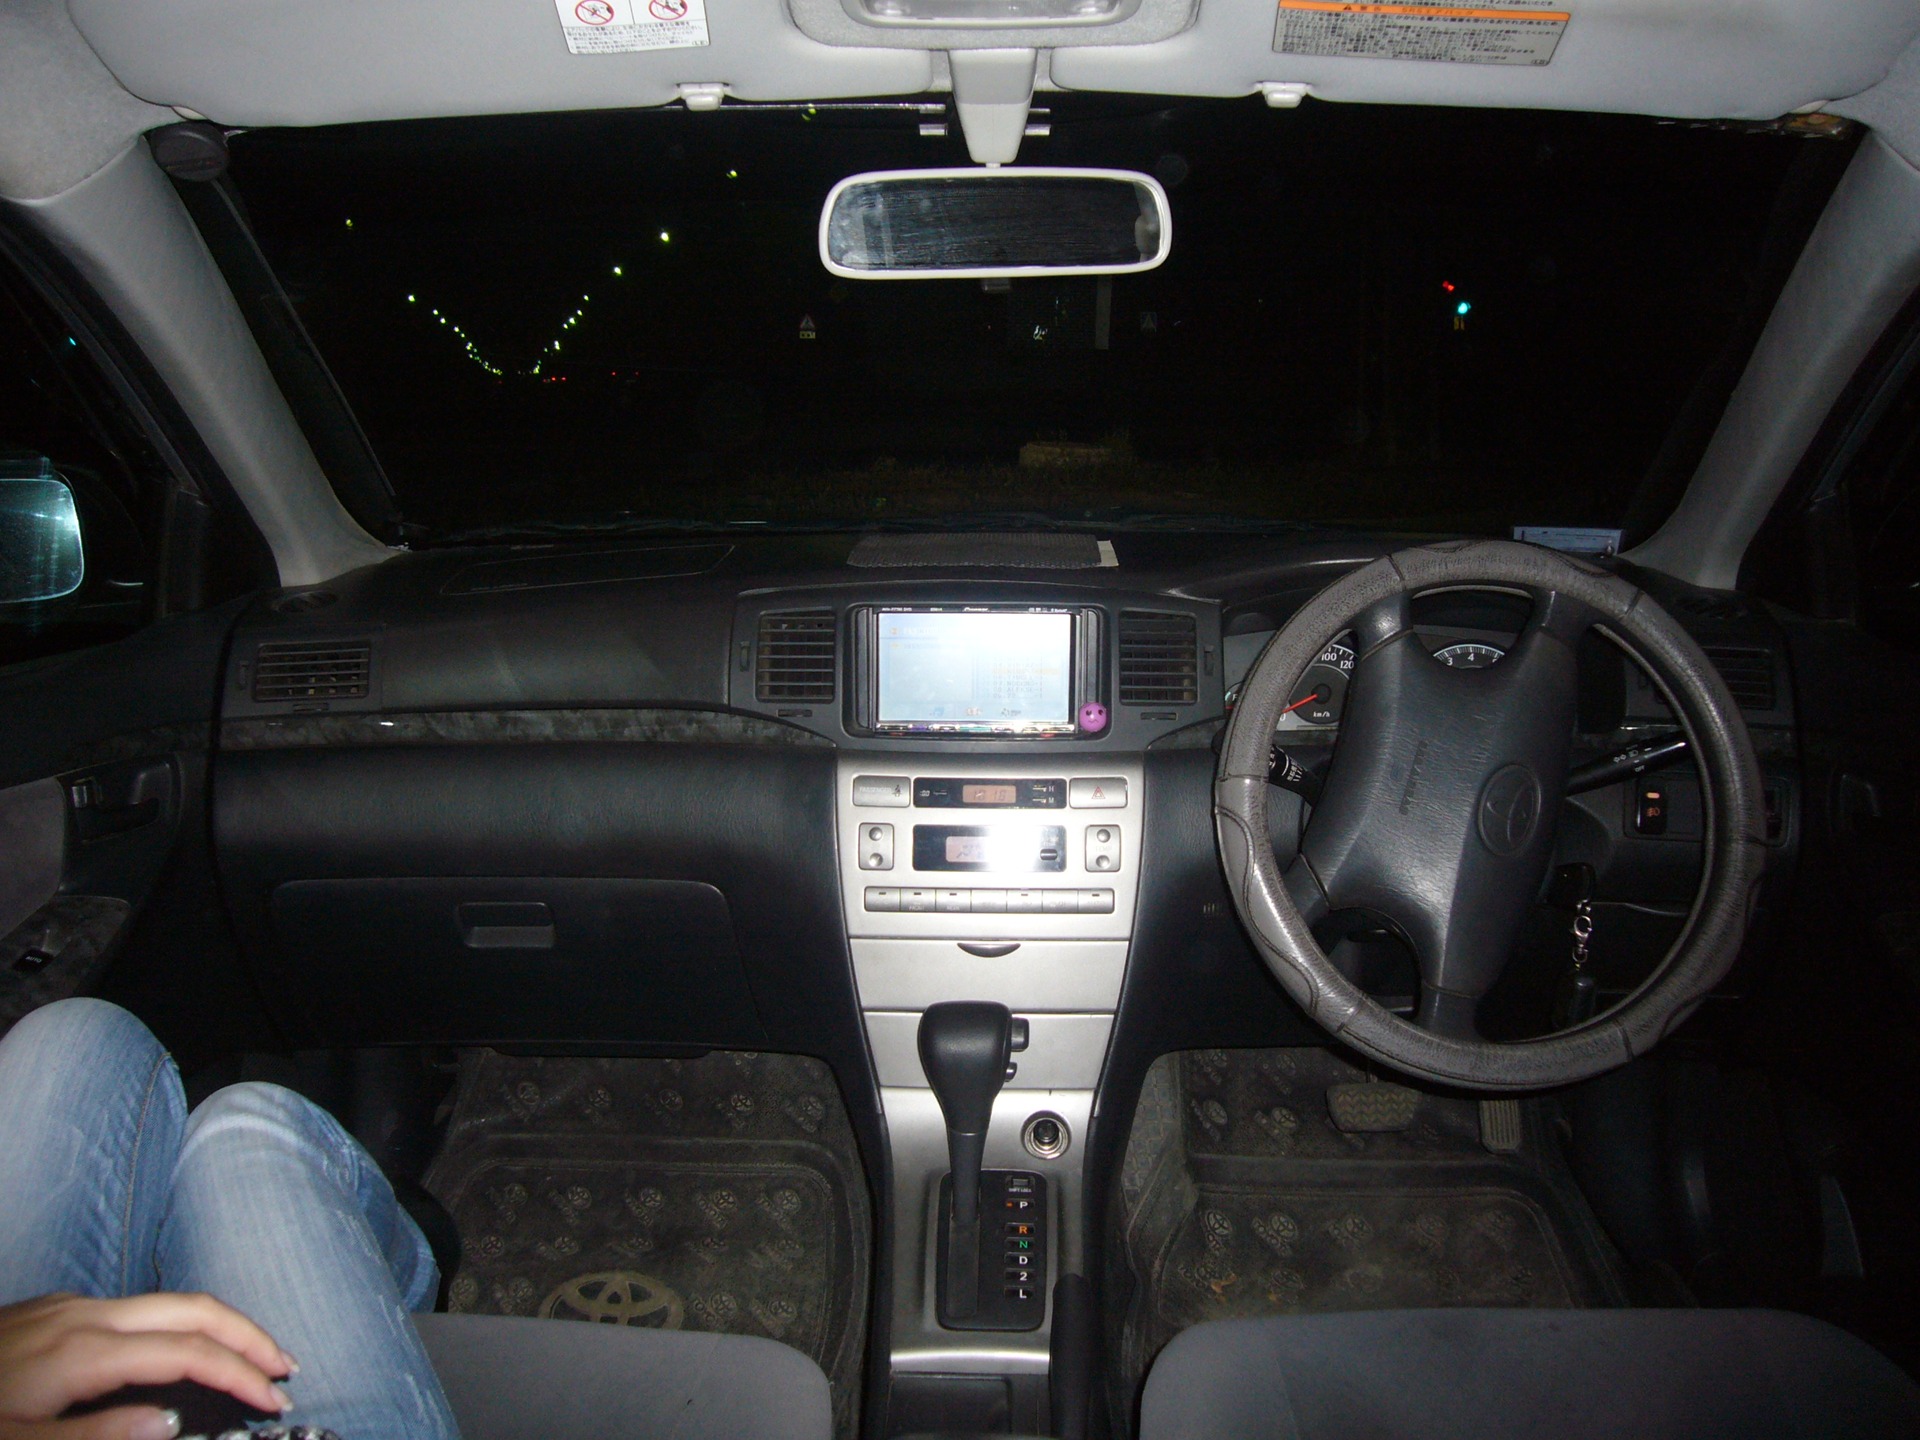        Toyota Corolla Fielder 15 2005 